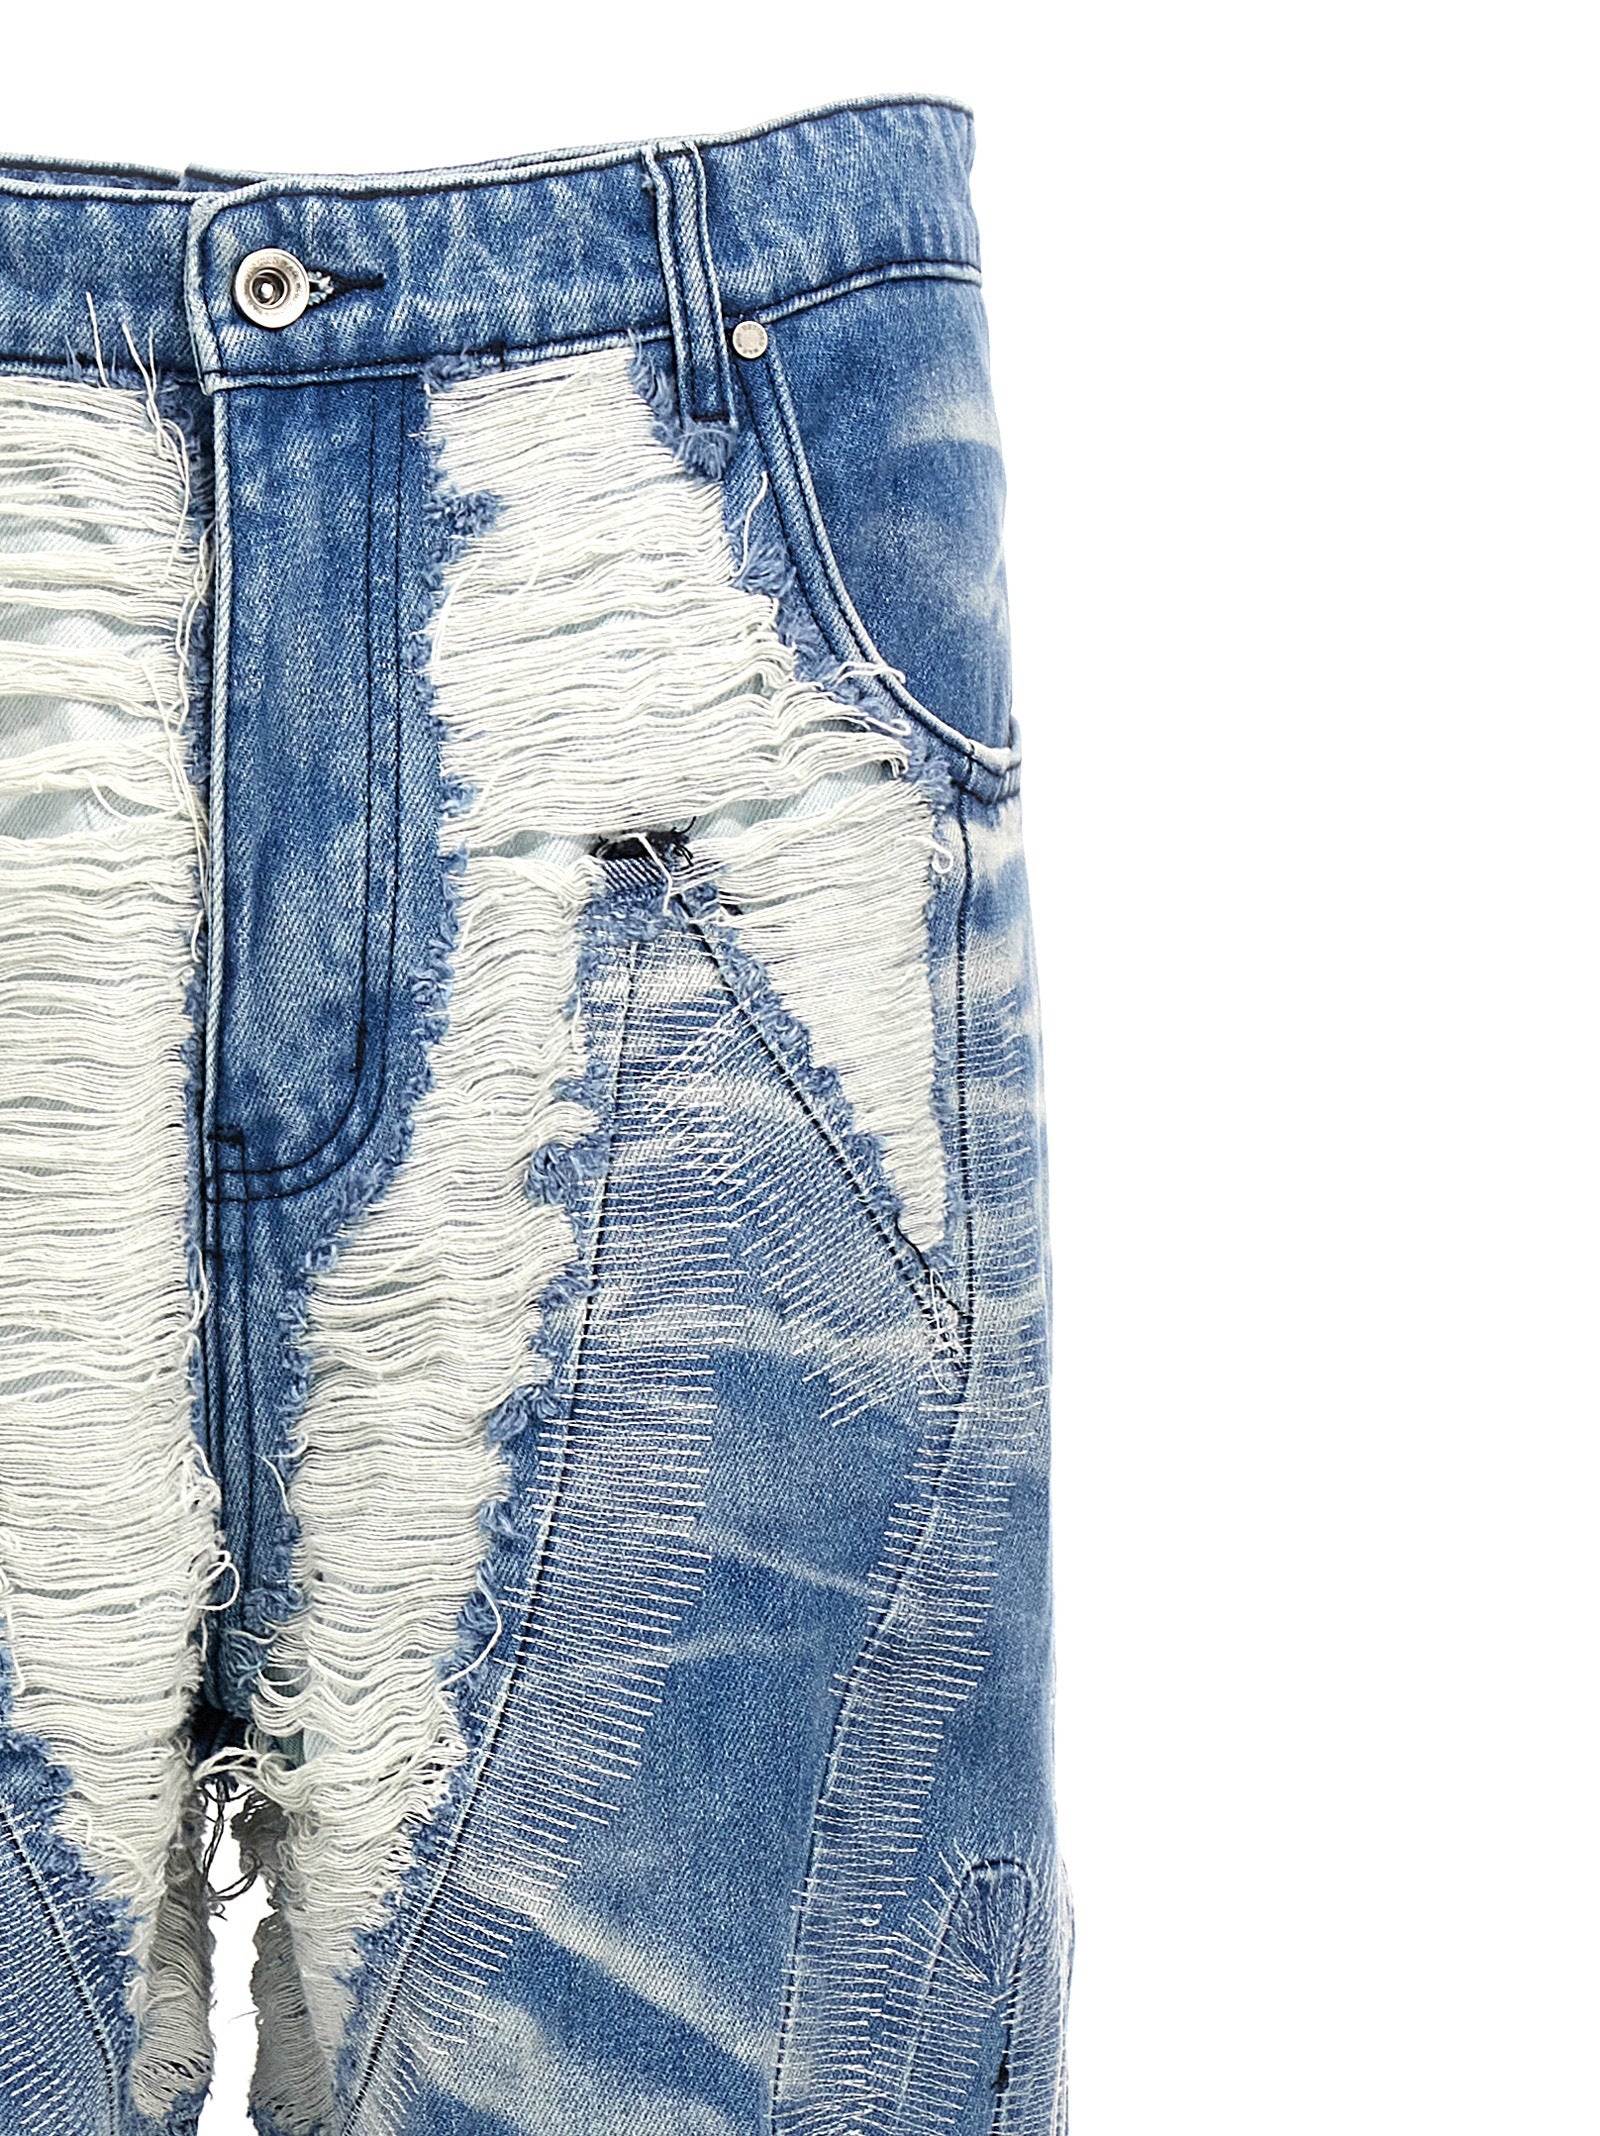 Shop Who Decides War Path Denim Jeans Light Blue